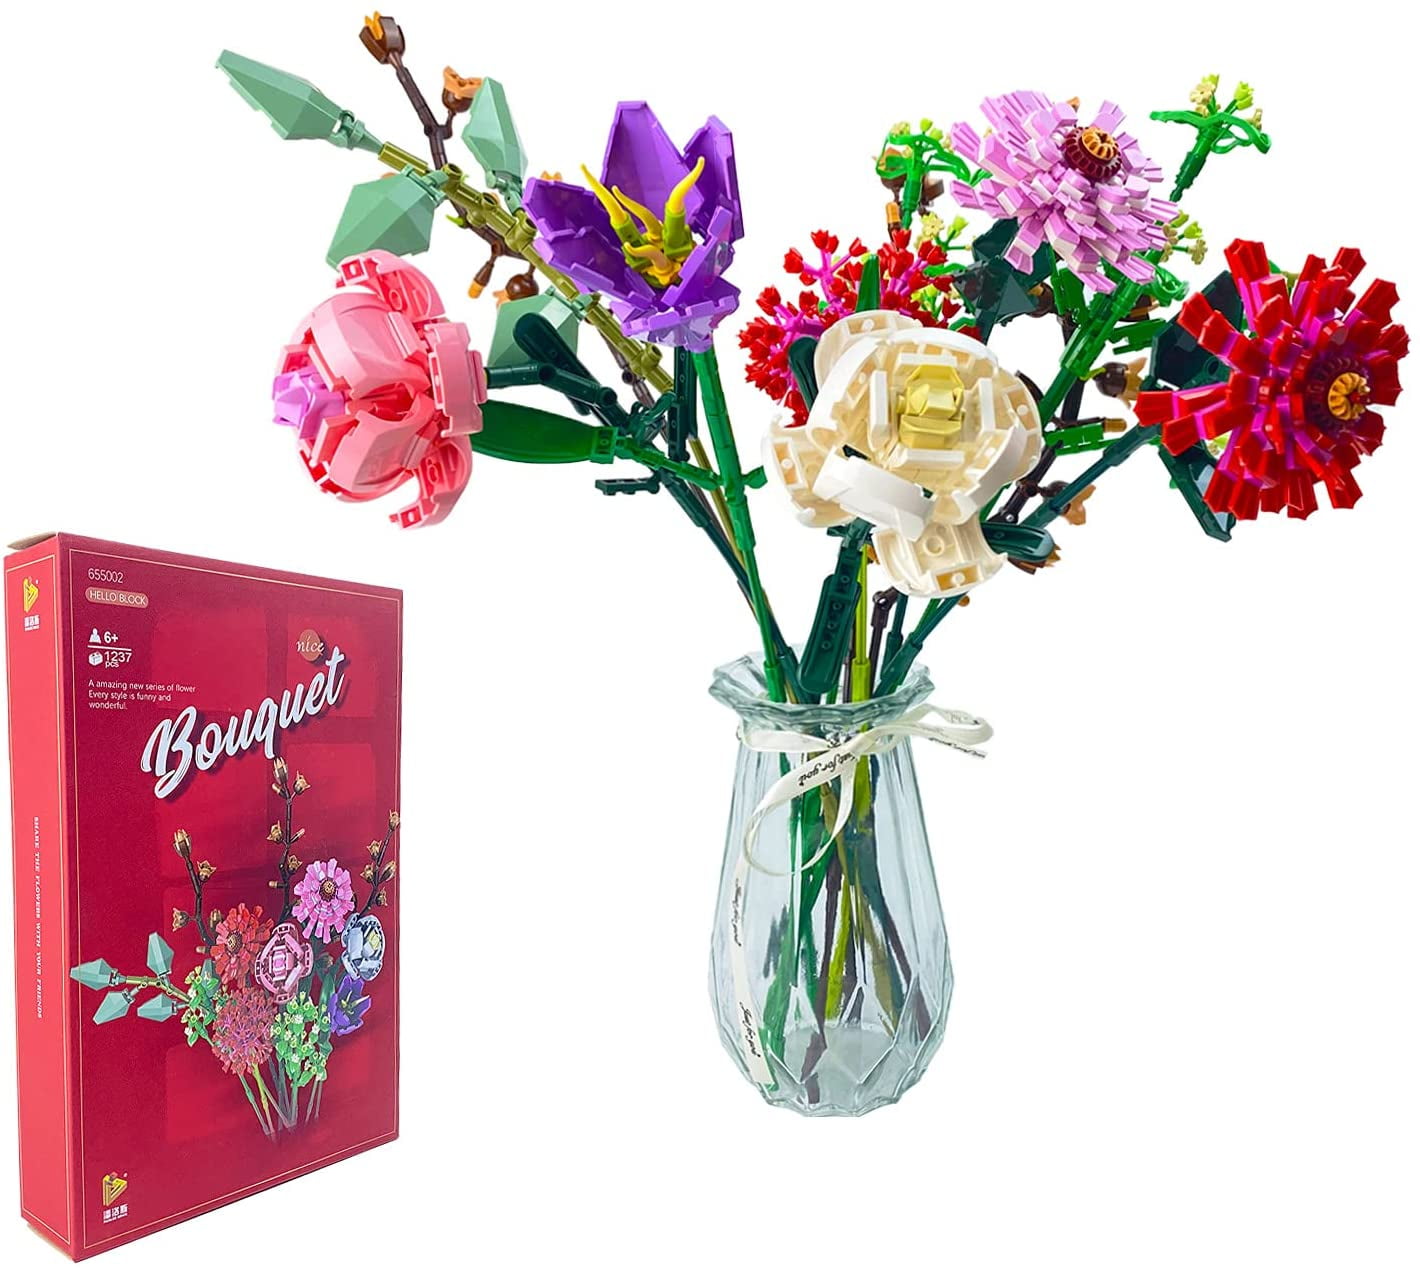 Details about   Flower Vase for Set 10280 Flower Bouquet Building Blocks Toys 533 PCS Bricks 